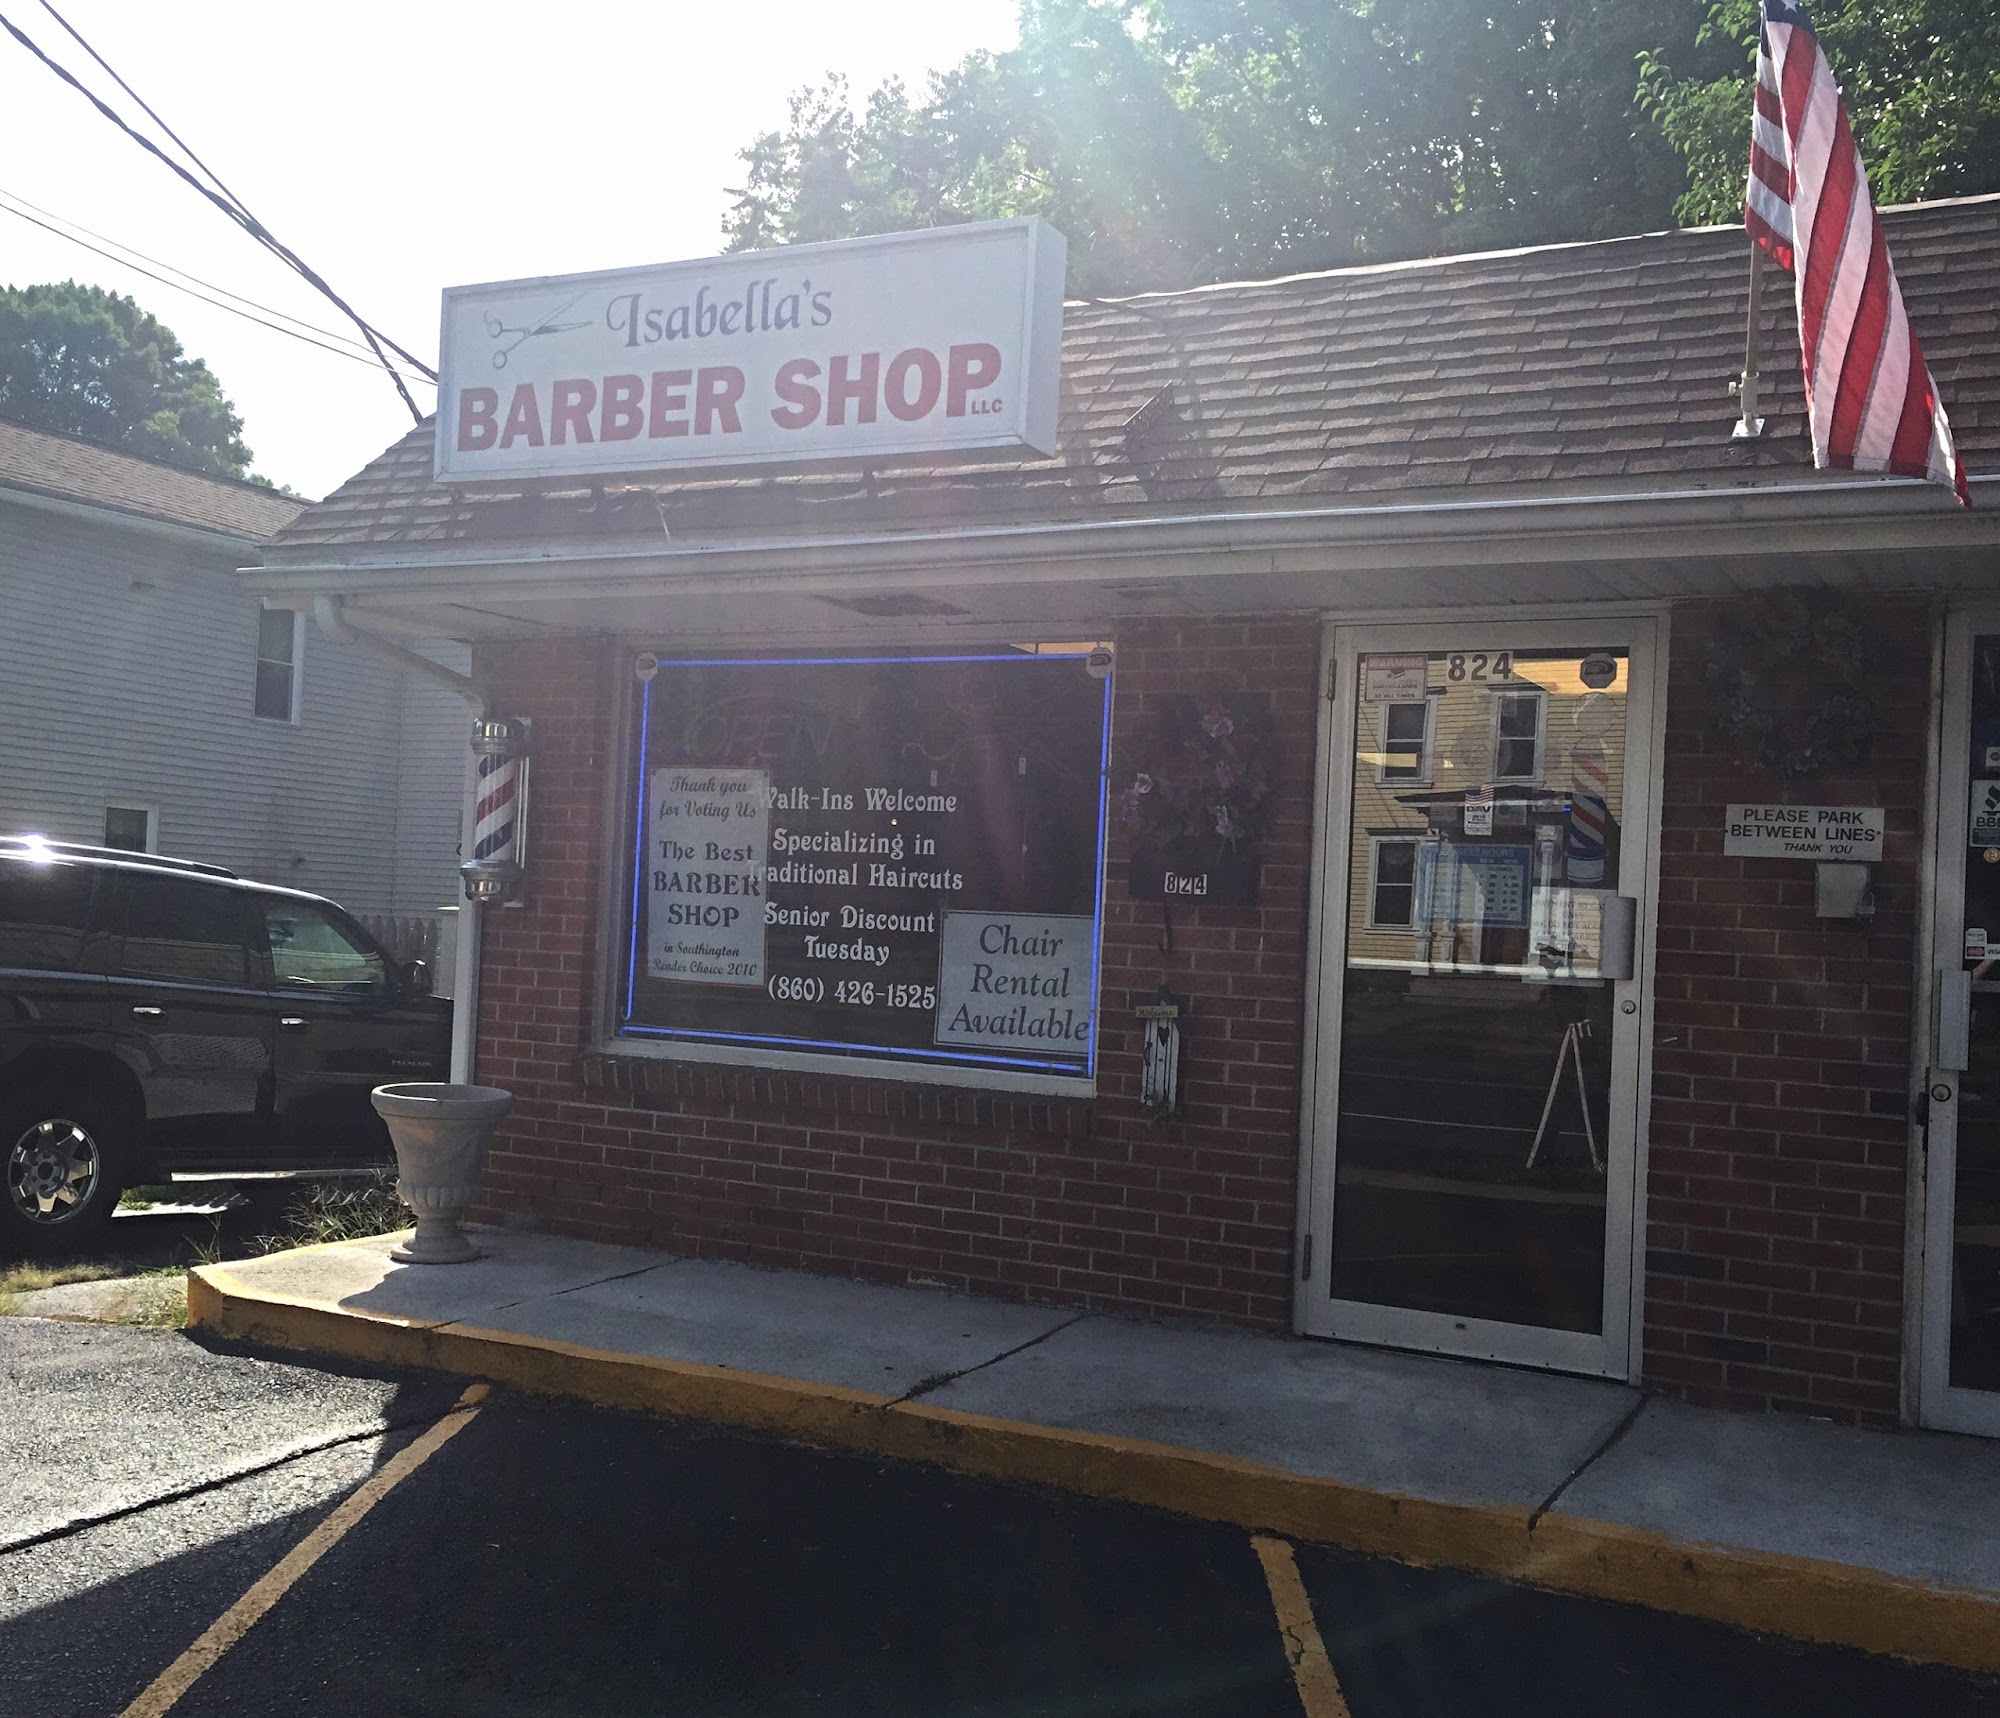 Isabella's Barber Shop 824 S Main St, Plantsville Connecticut 06479